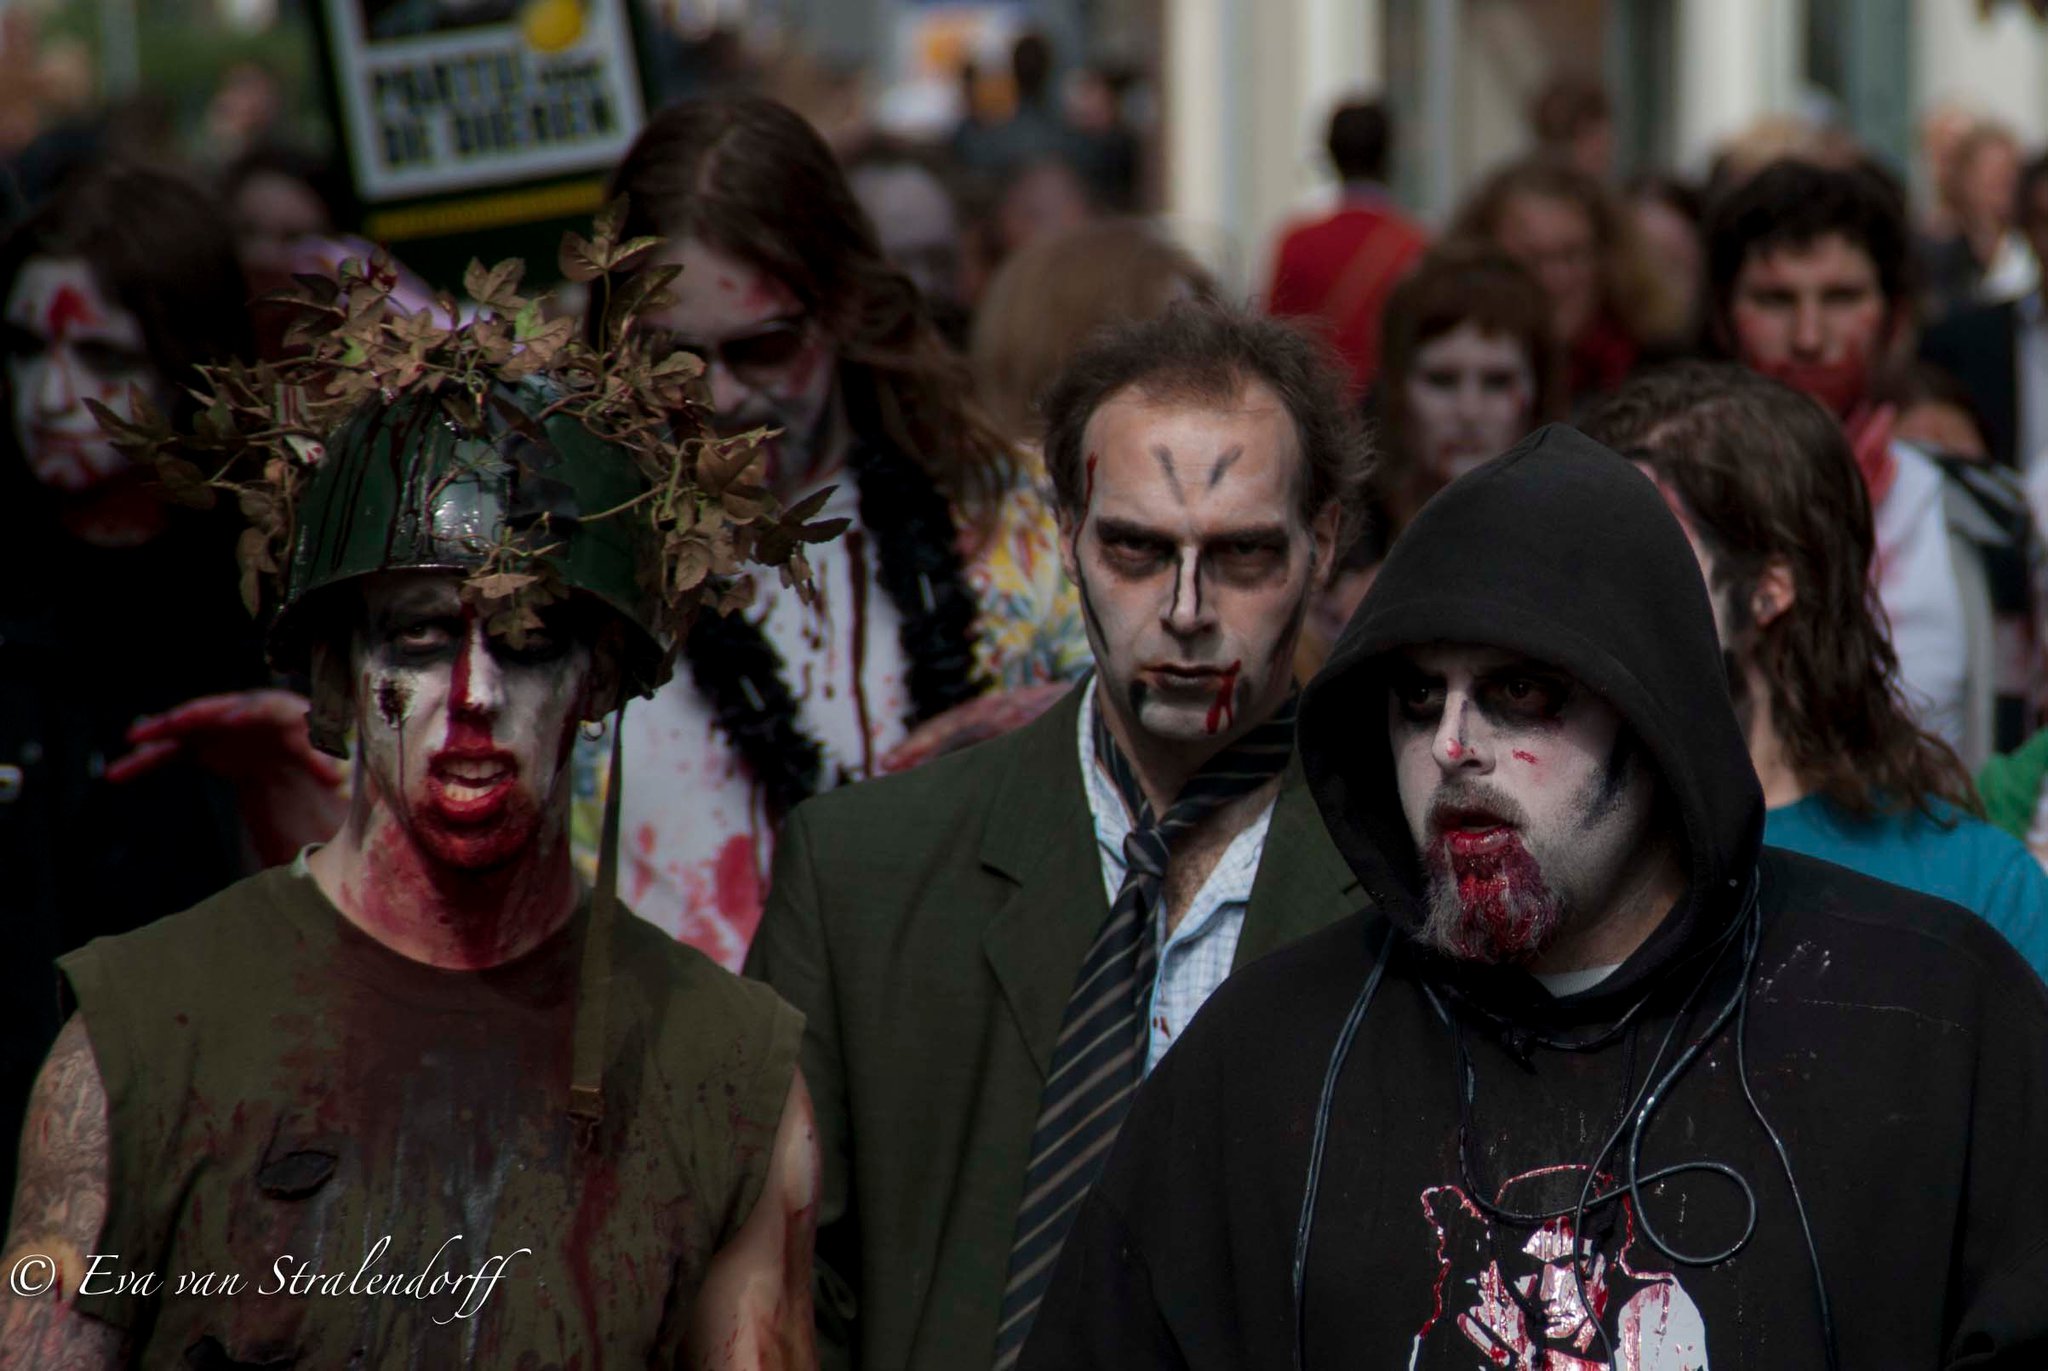 Zombiewalk arnhem 2011